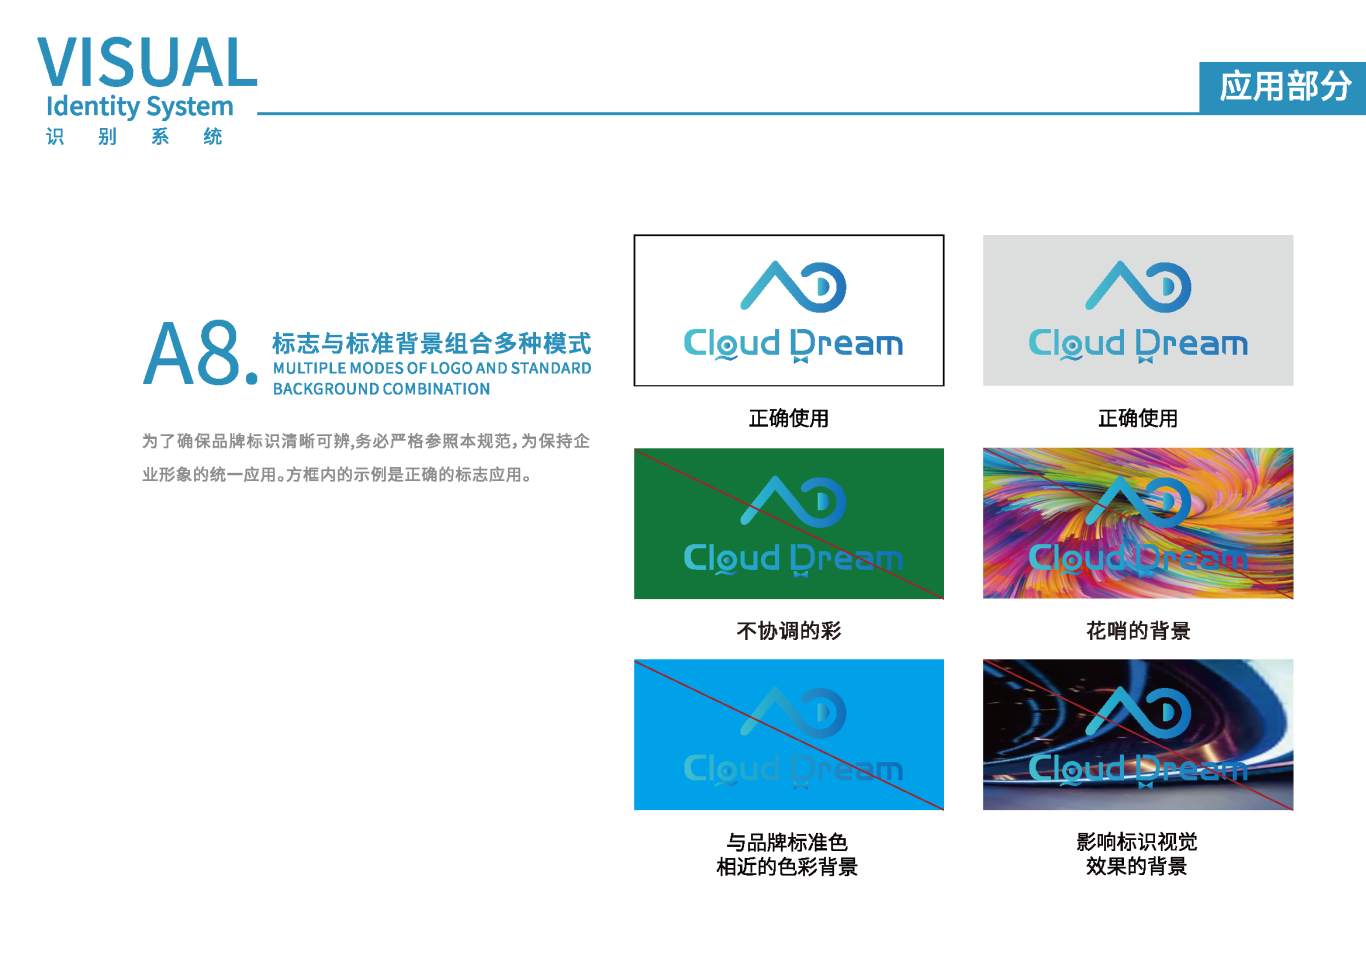 Cloud DreamVIS視覺識別系統手冊圖9